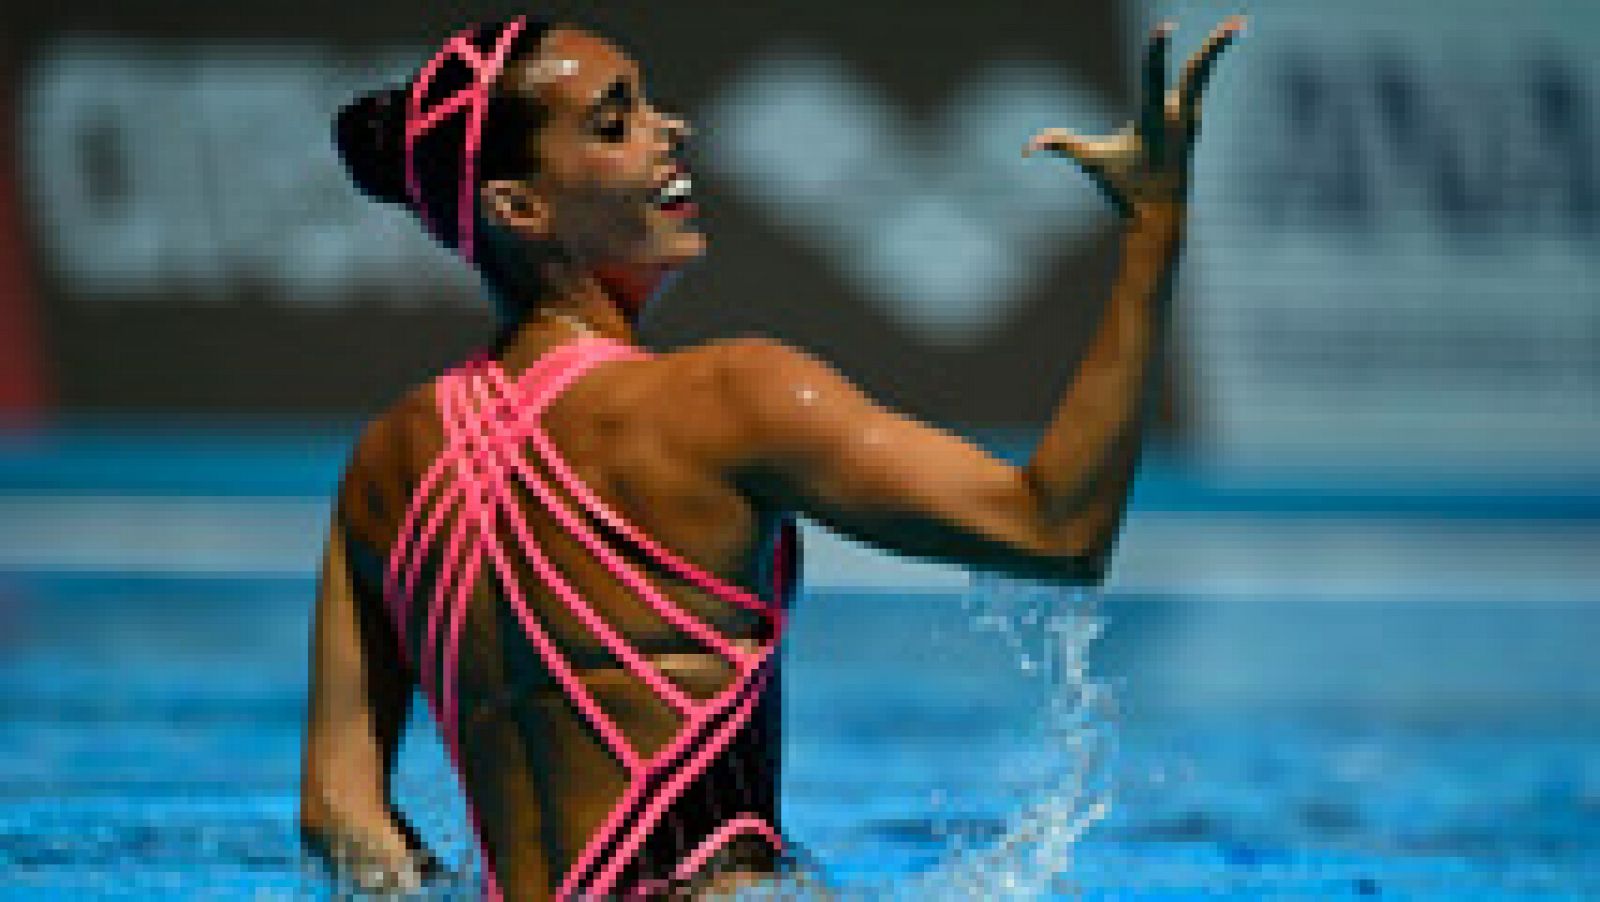 La nadadora española Ona Carbonell ha logrado la medalla de plata en la modalidad del solo libre en el Mundial de Budapest, con lo que suma su segundo metal en el campeonato.